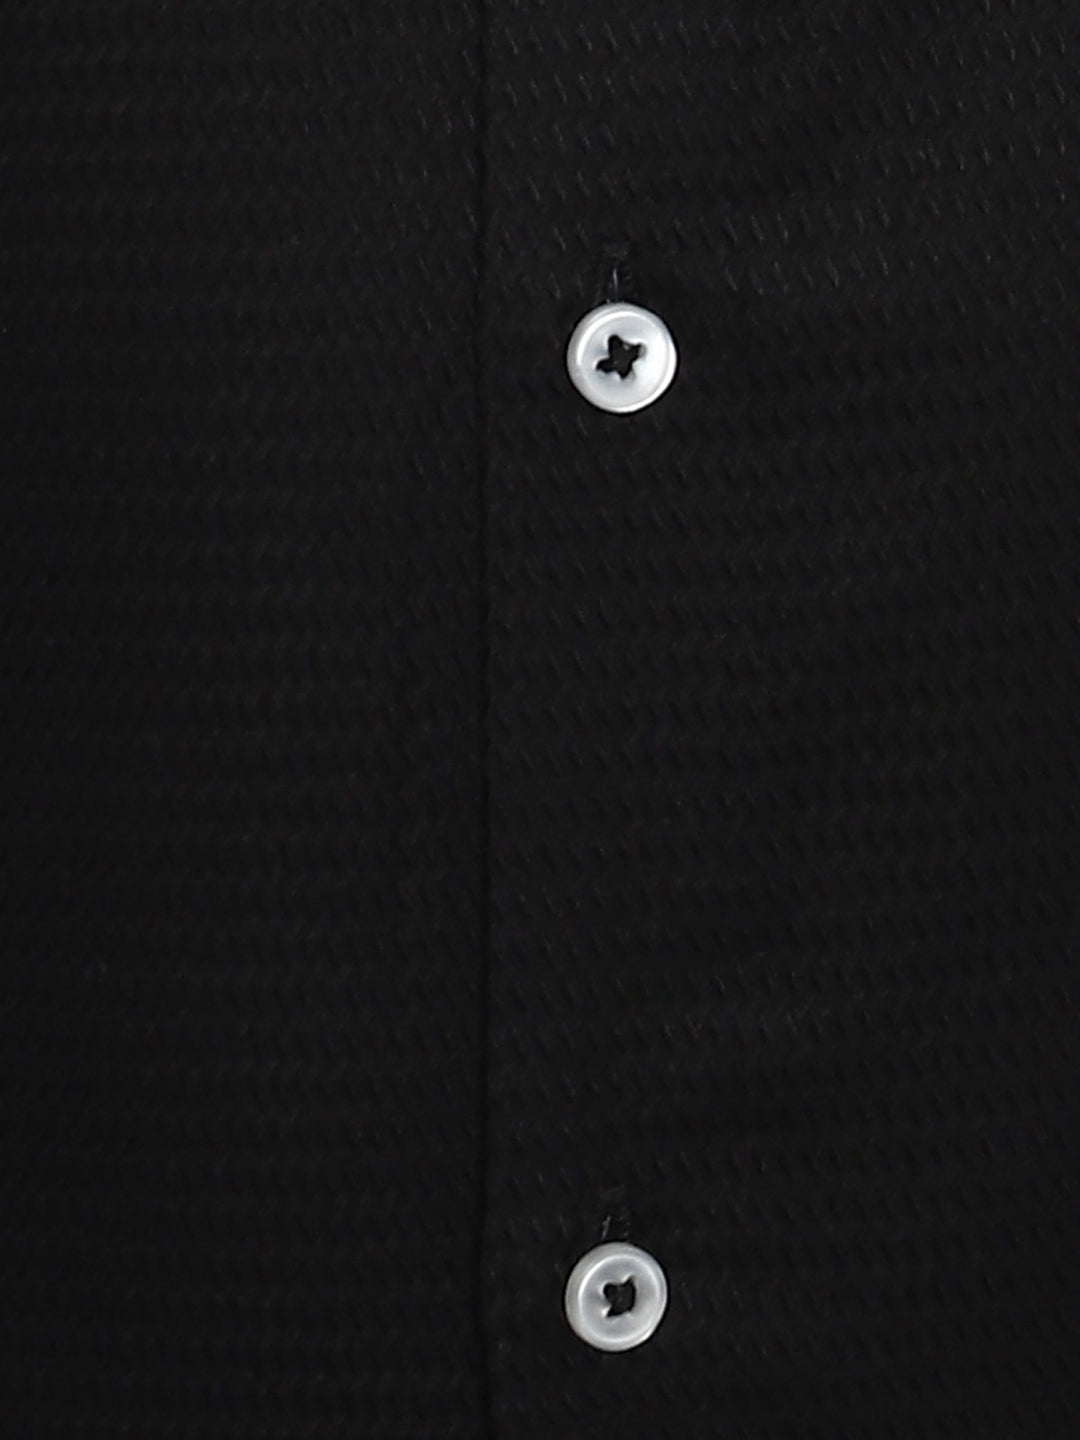 Black Cotton Self Design Slim Fit Formal Shirt